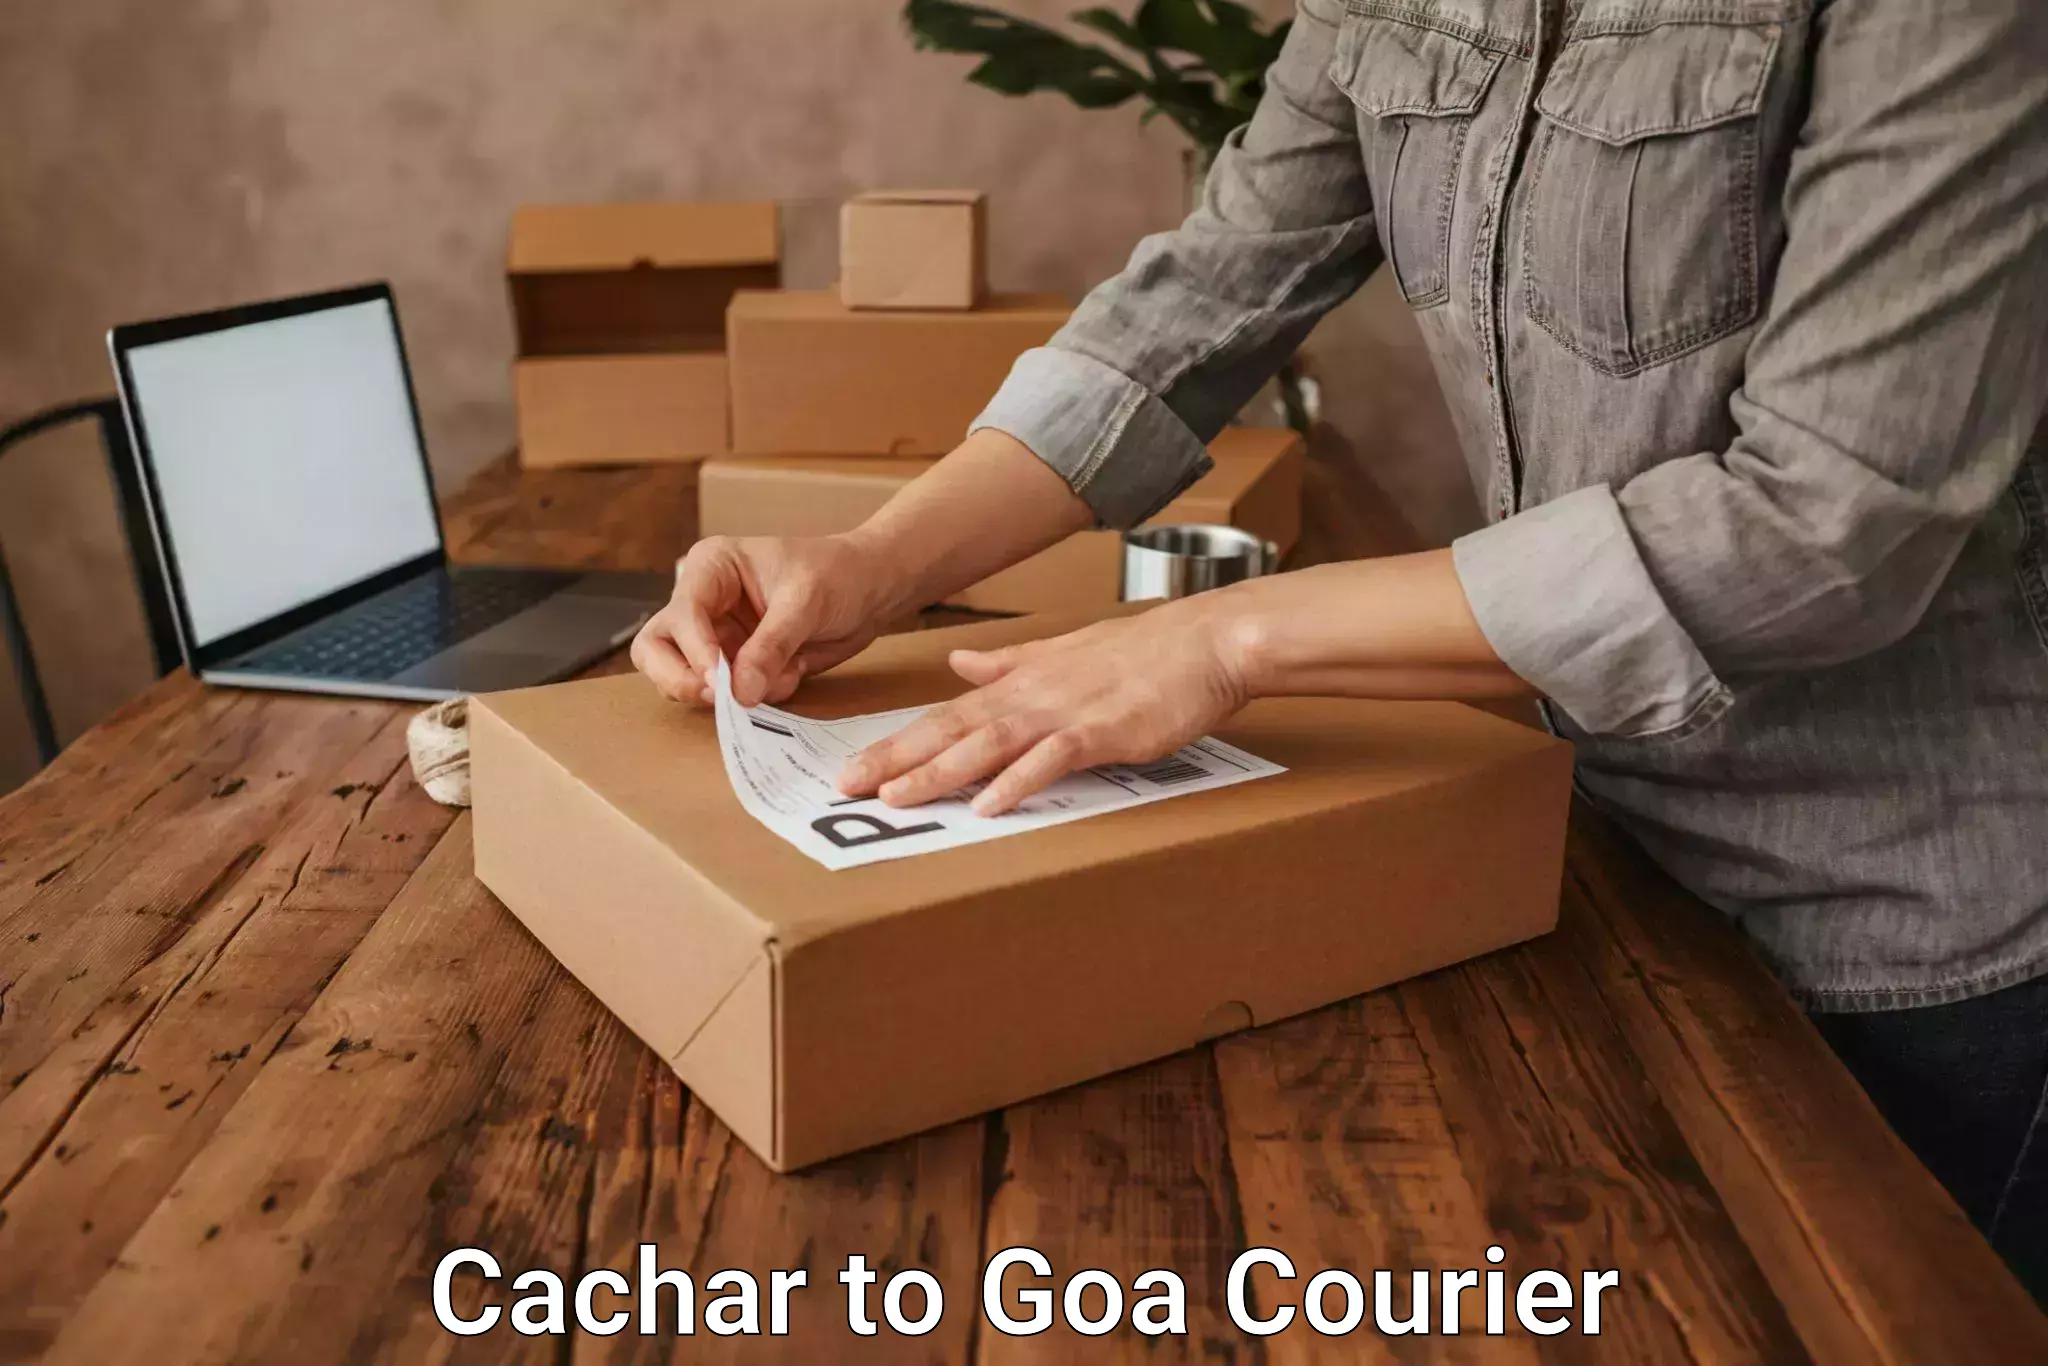 Digital courier platforms Cachar to Vasco da Gama